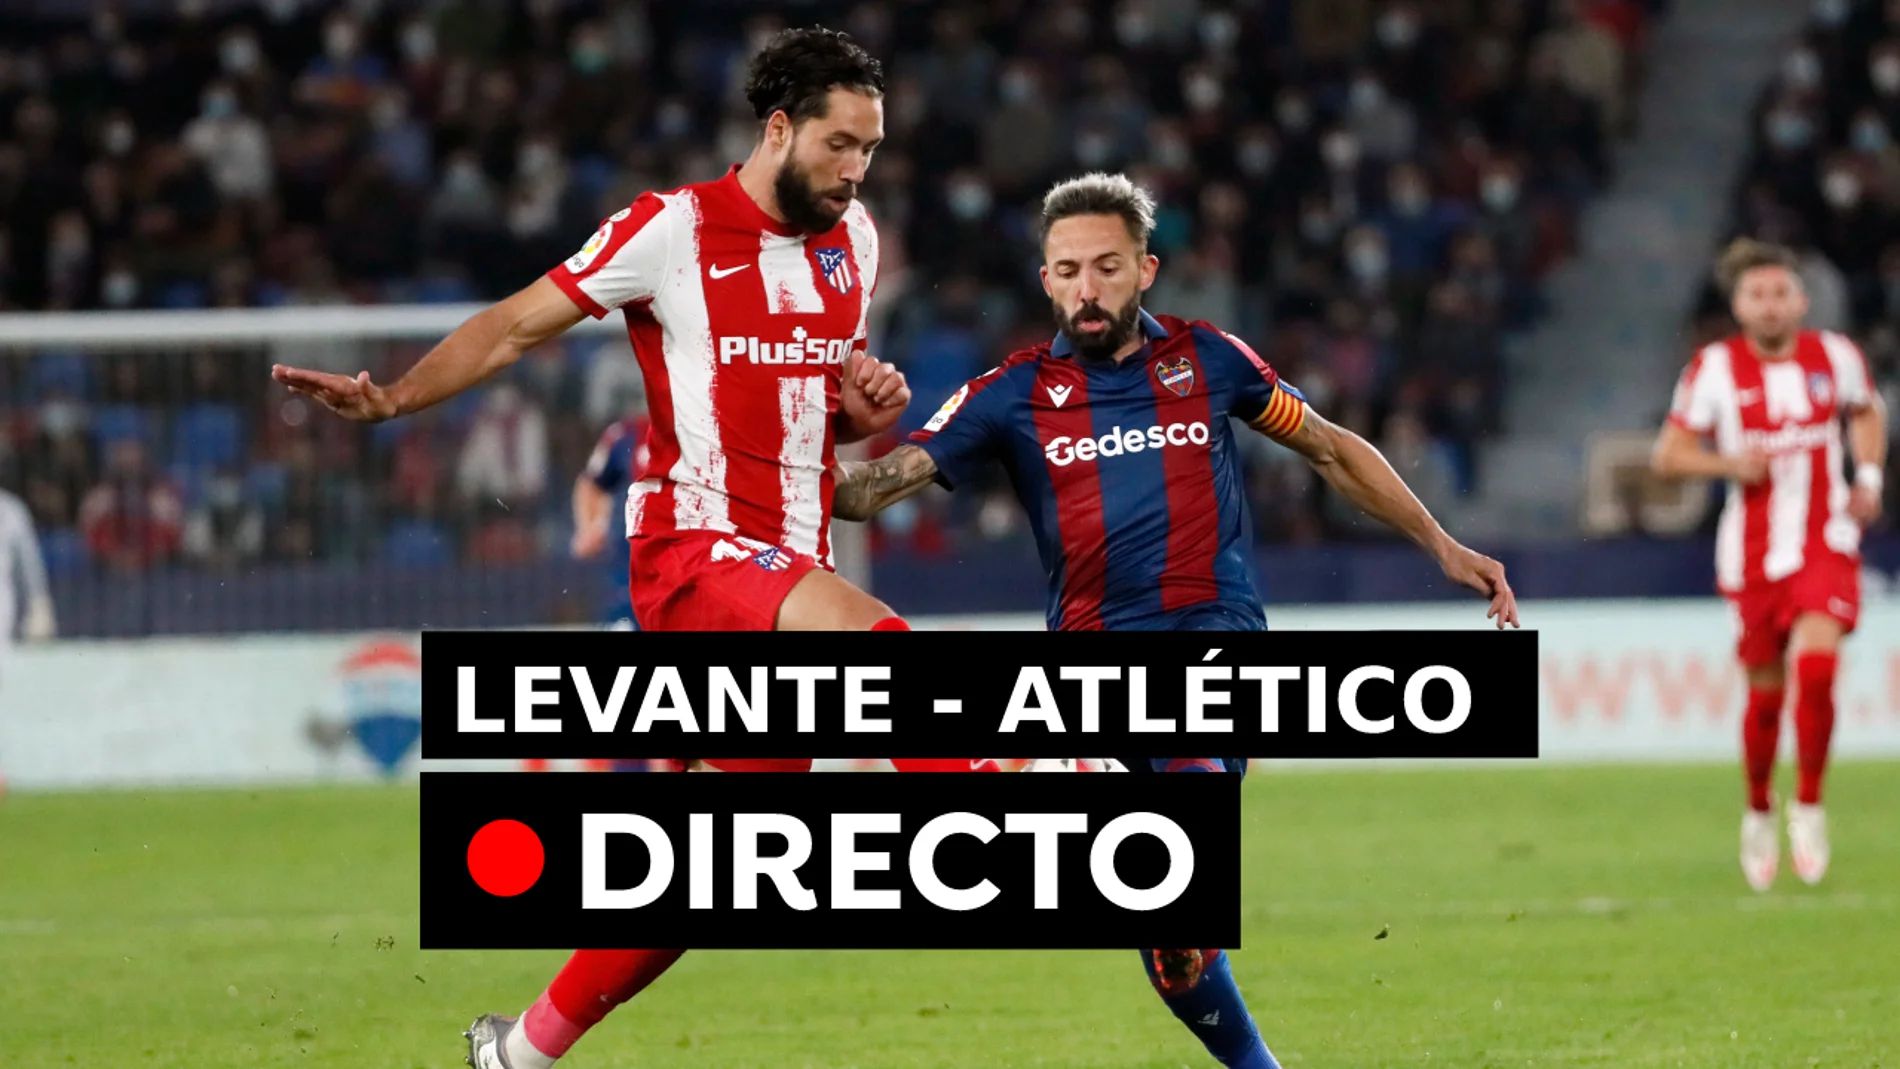 Cómo va el Levante - Atlético de Madrid, resultado en directo